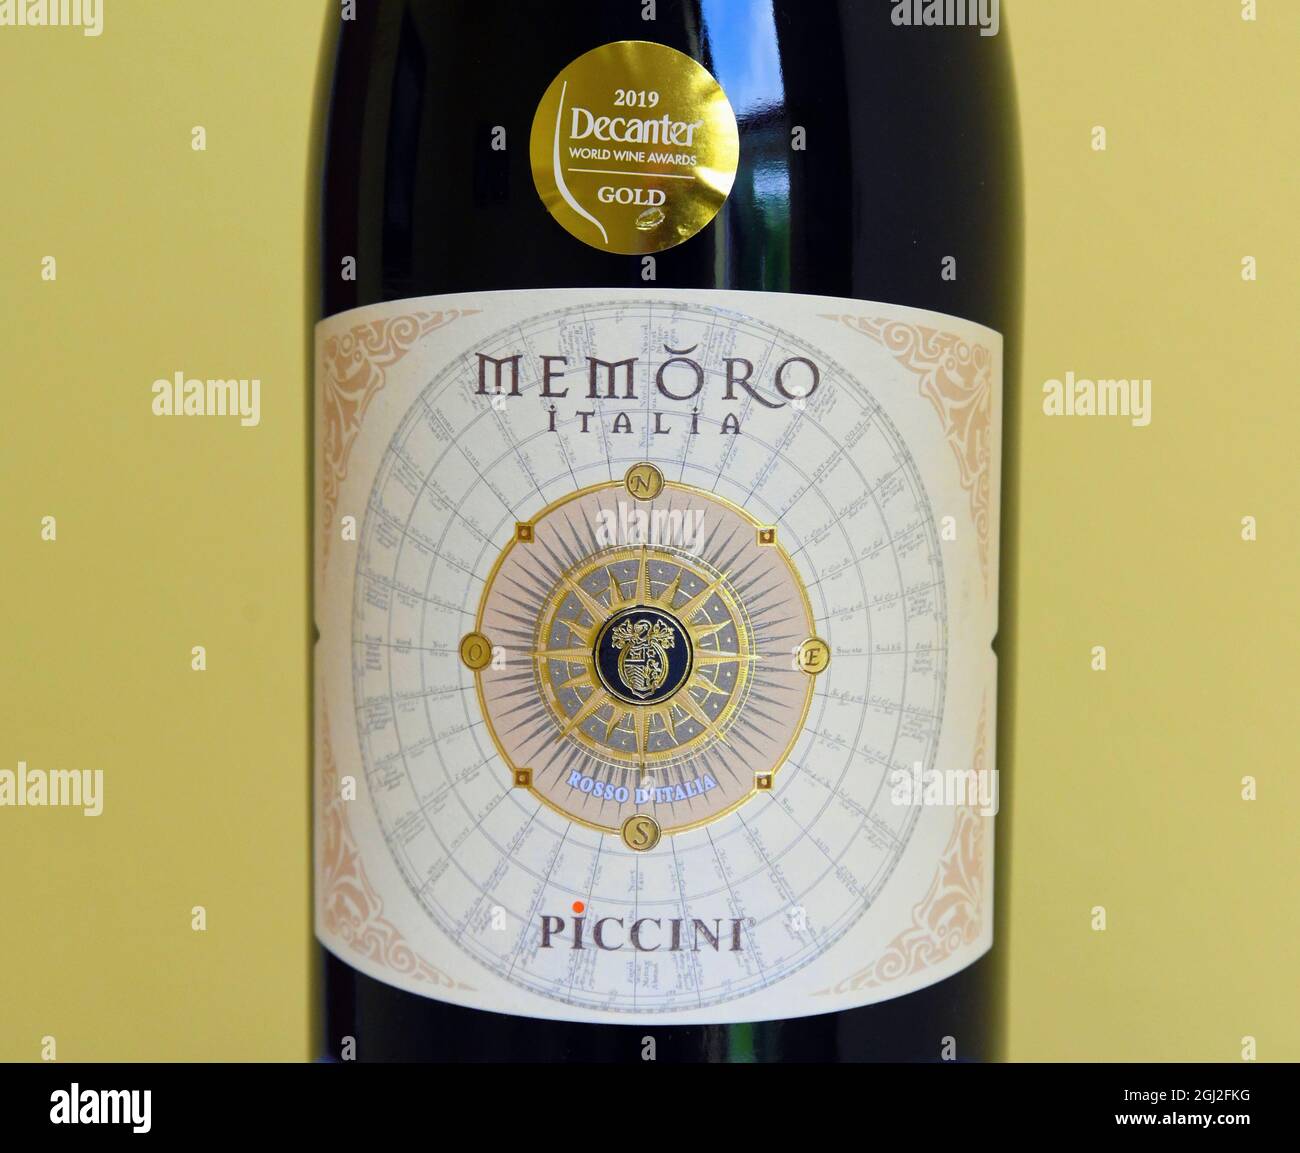 Wine label. Memoro Italia. Piccini. Rosso d'Italia. 2019 Decanter World  Wine Awards Gold Stock Photo - Alamy